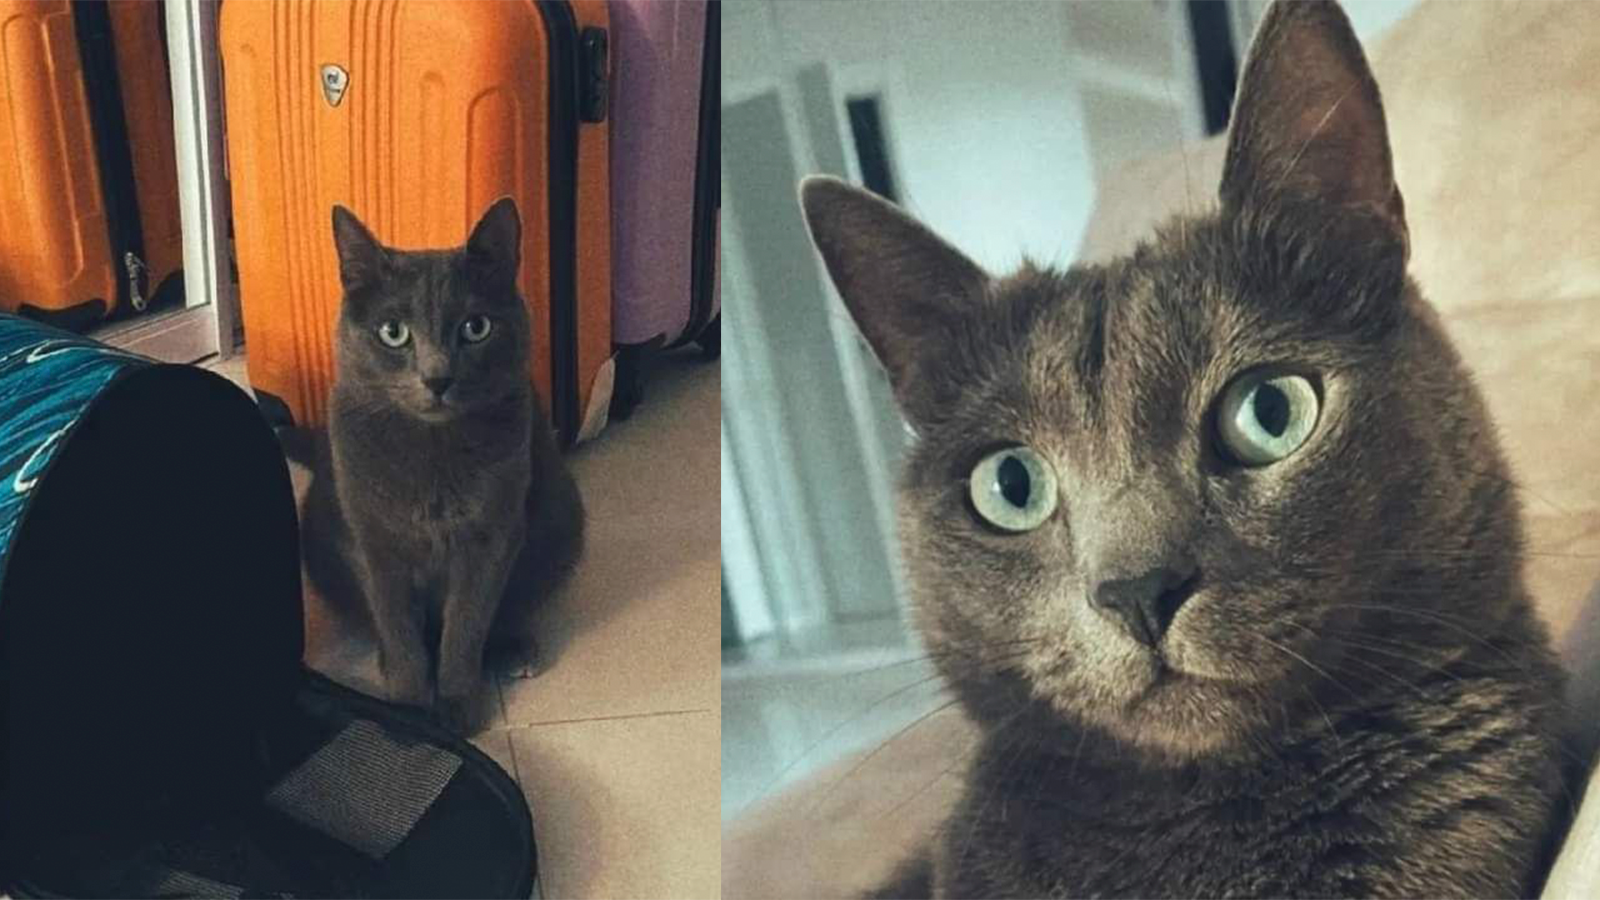 Осторожно, он слишком милый: в аэропорту Домодедово ищут сбежавшего  породистого кота - Питомцы Mail.ru